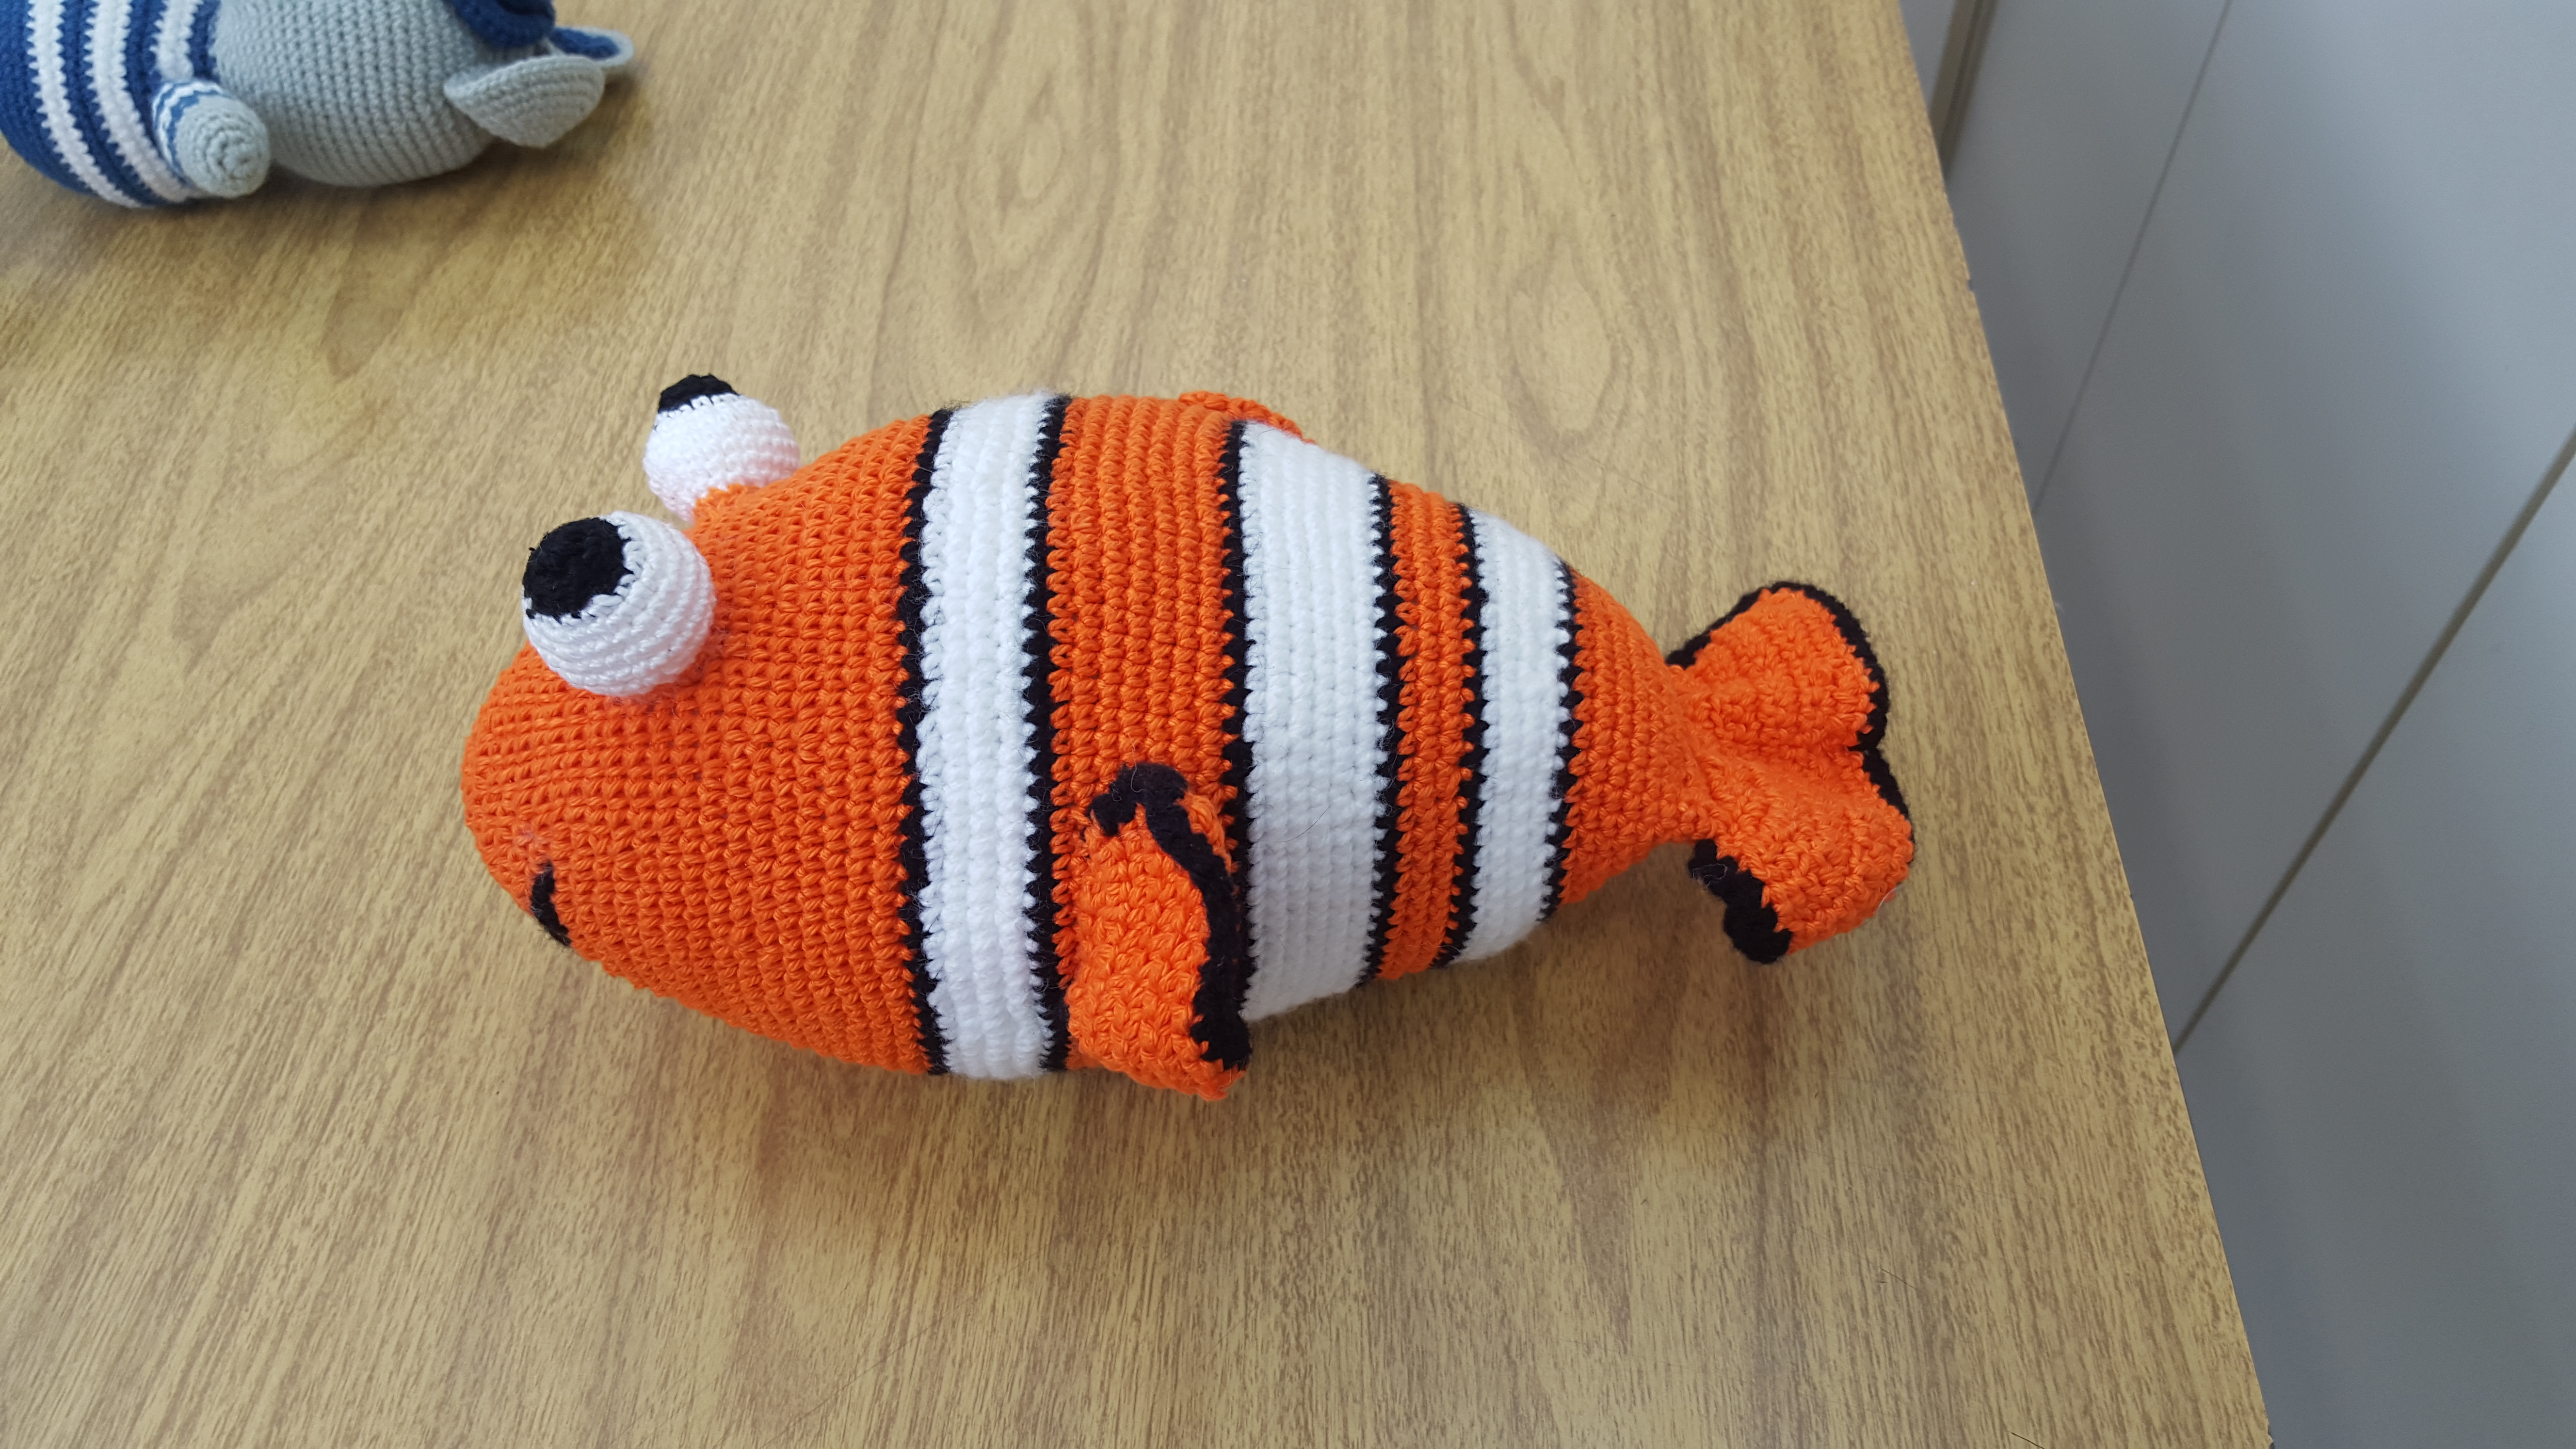 #Paracegover Na imagem está o peixe Nemo, feito em crochê, personagem da animação Procurando Nemo